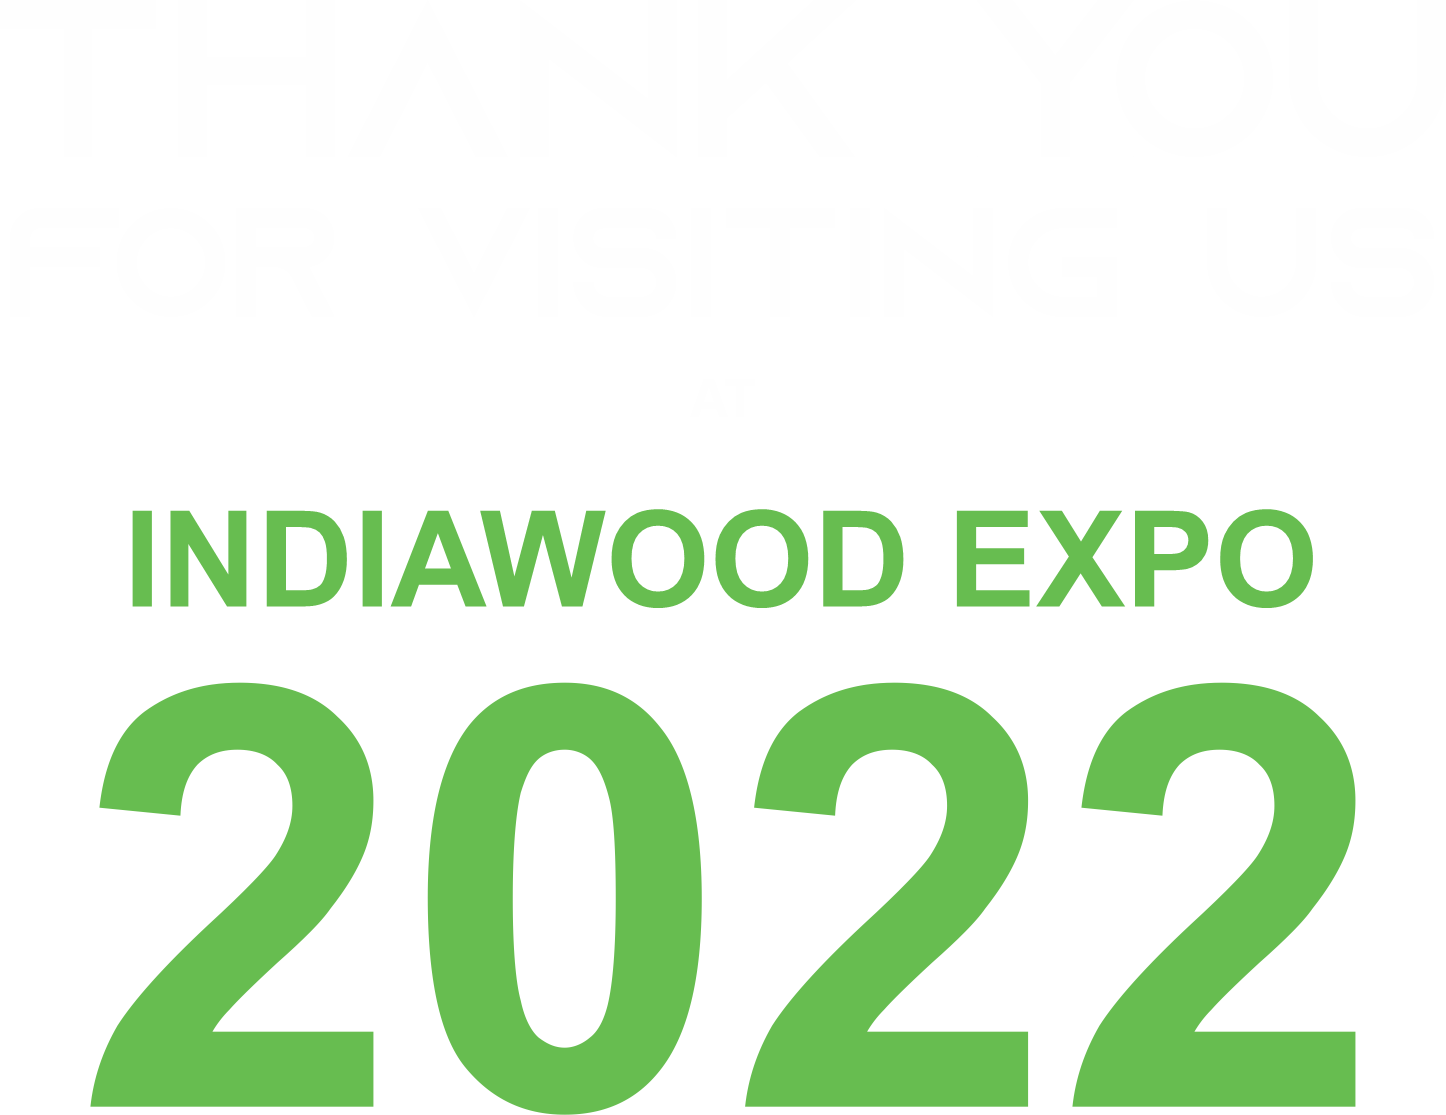 Visit Aristo india, bangalore at India wood event